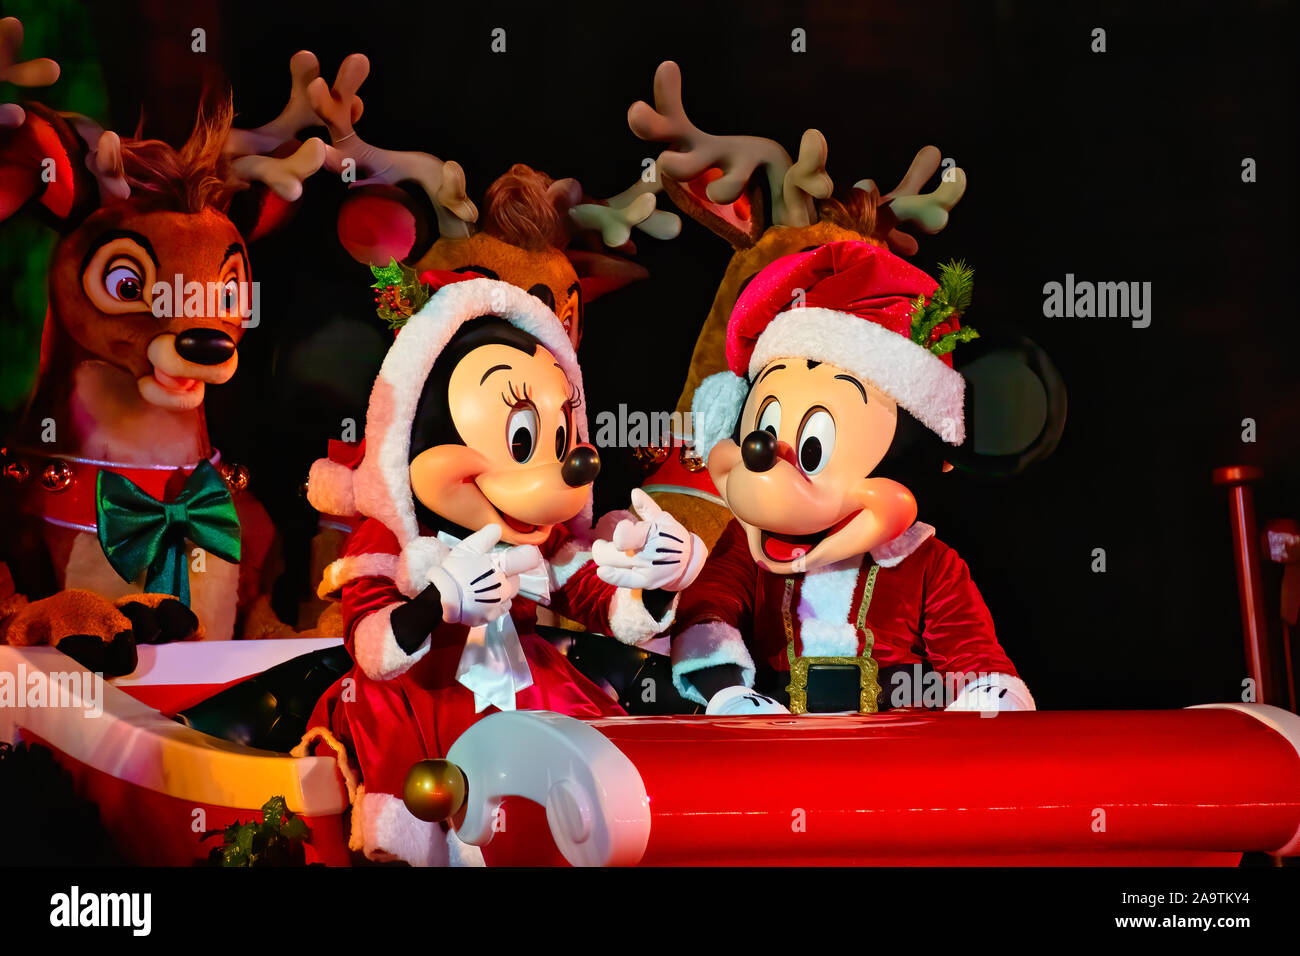 Immagini Natalizie Topolino E Minnie.Topolino E Minnie Mouse Come Il Signor E La Signora Claus In Film Di Natale Foto Stock Alamy